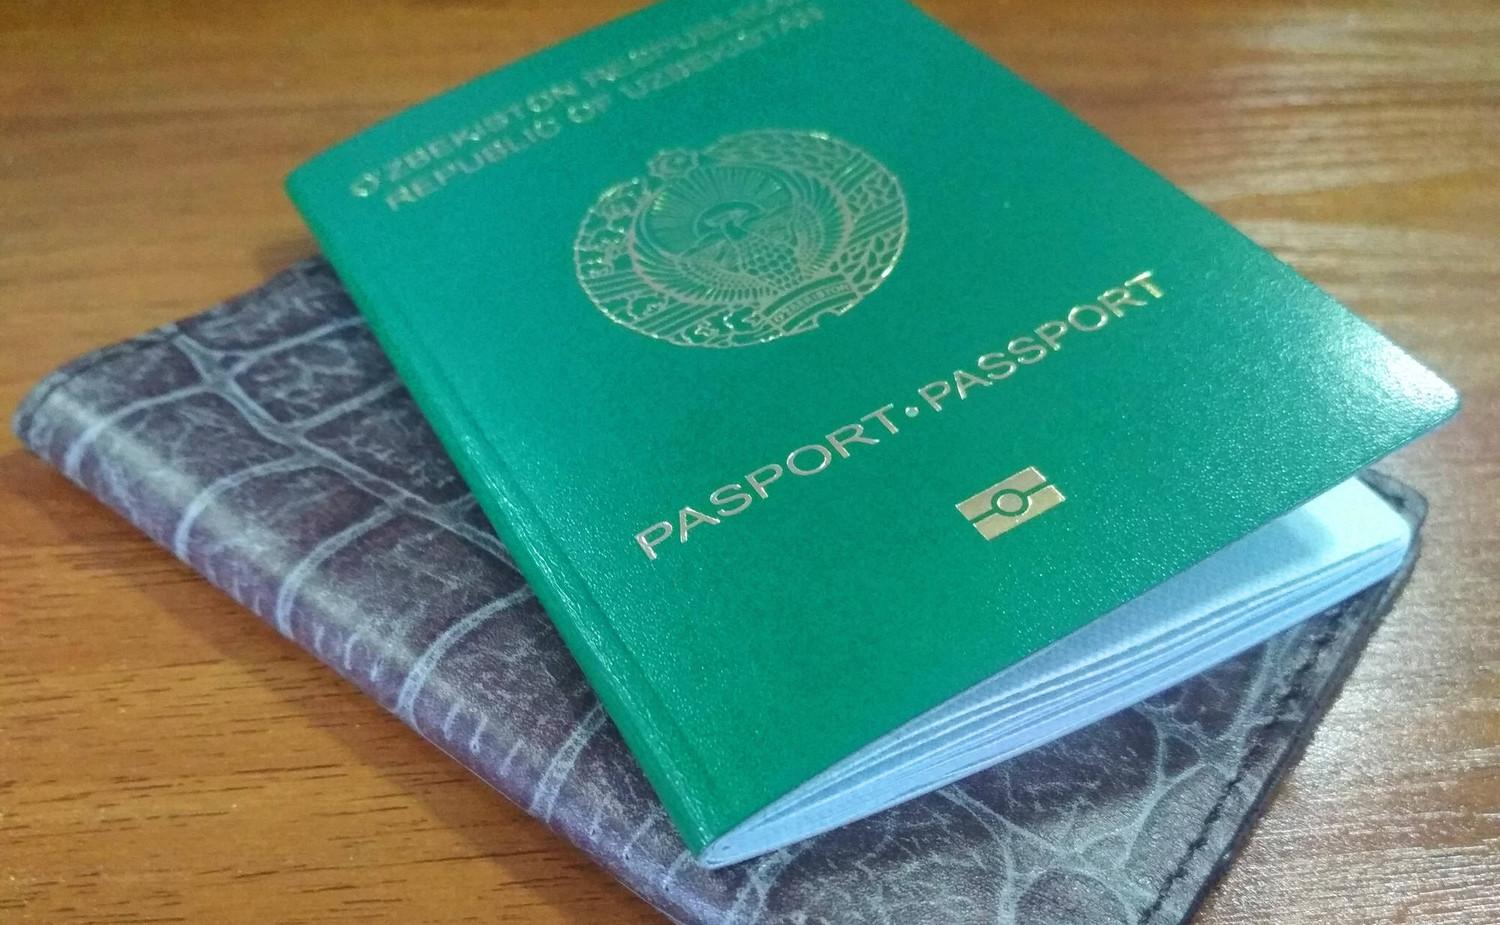 Endi 18 yoshgacha pasport olmagan shaxs javobgarlikka tortilmaydi